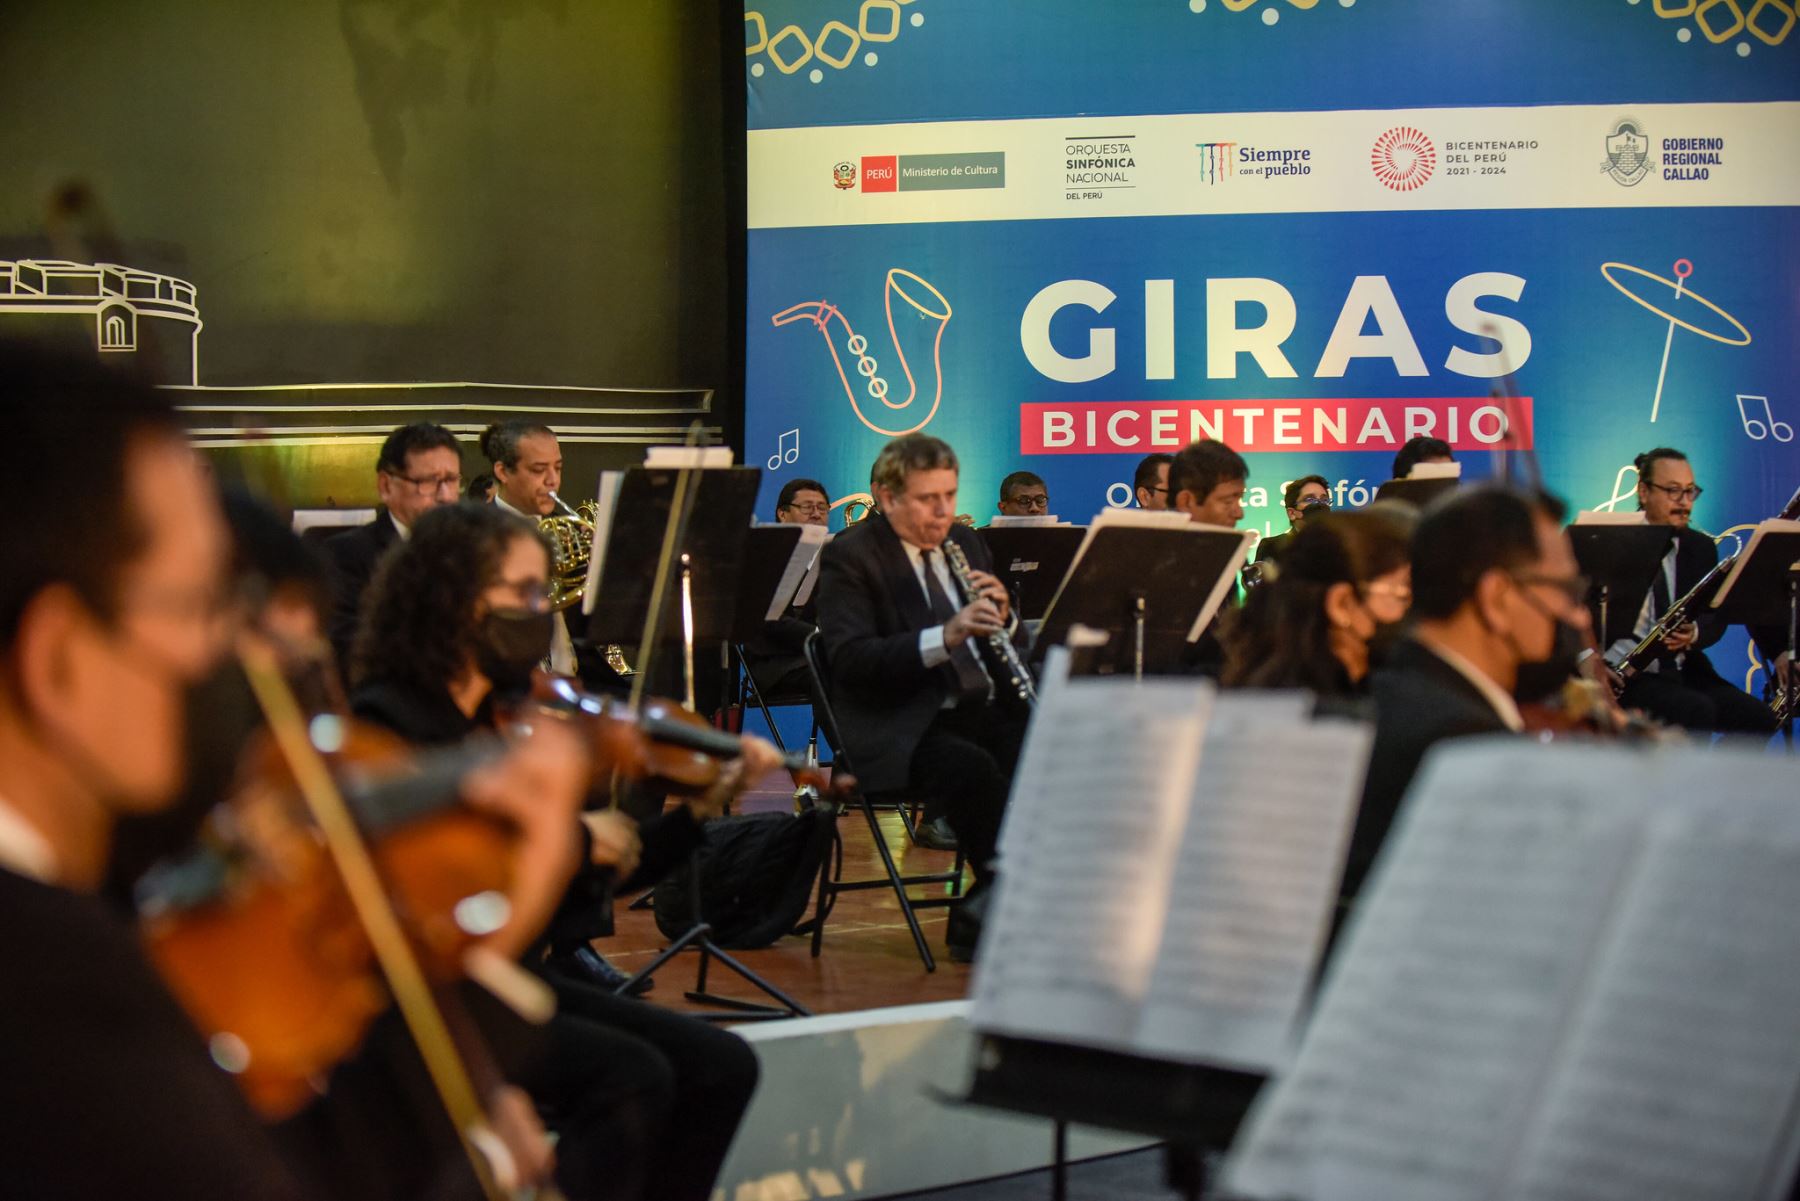 Giras Bicentenario: la música como herramienta para difundir cultura e identidad